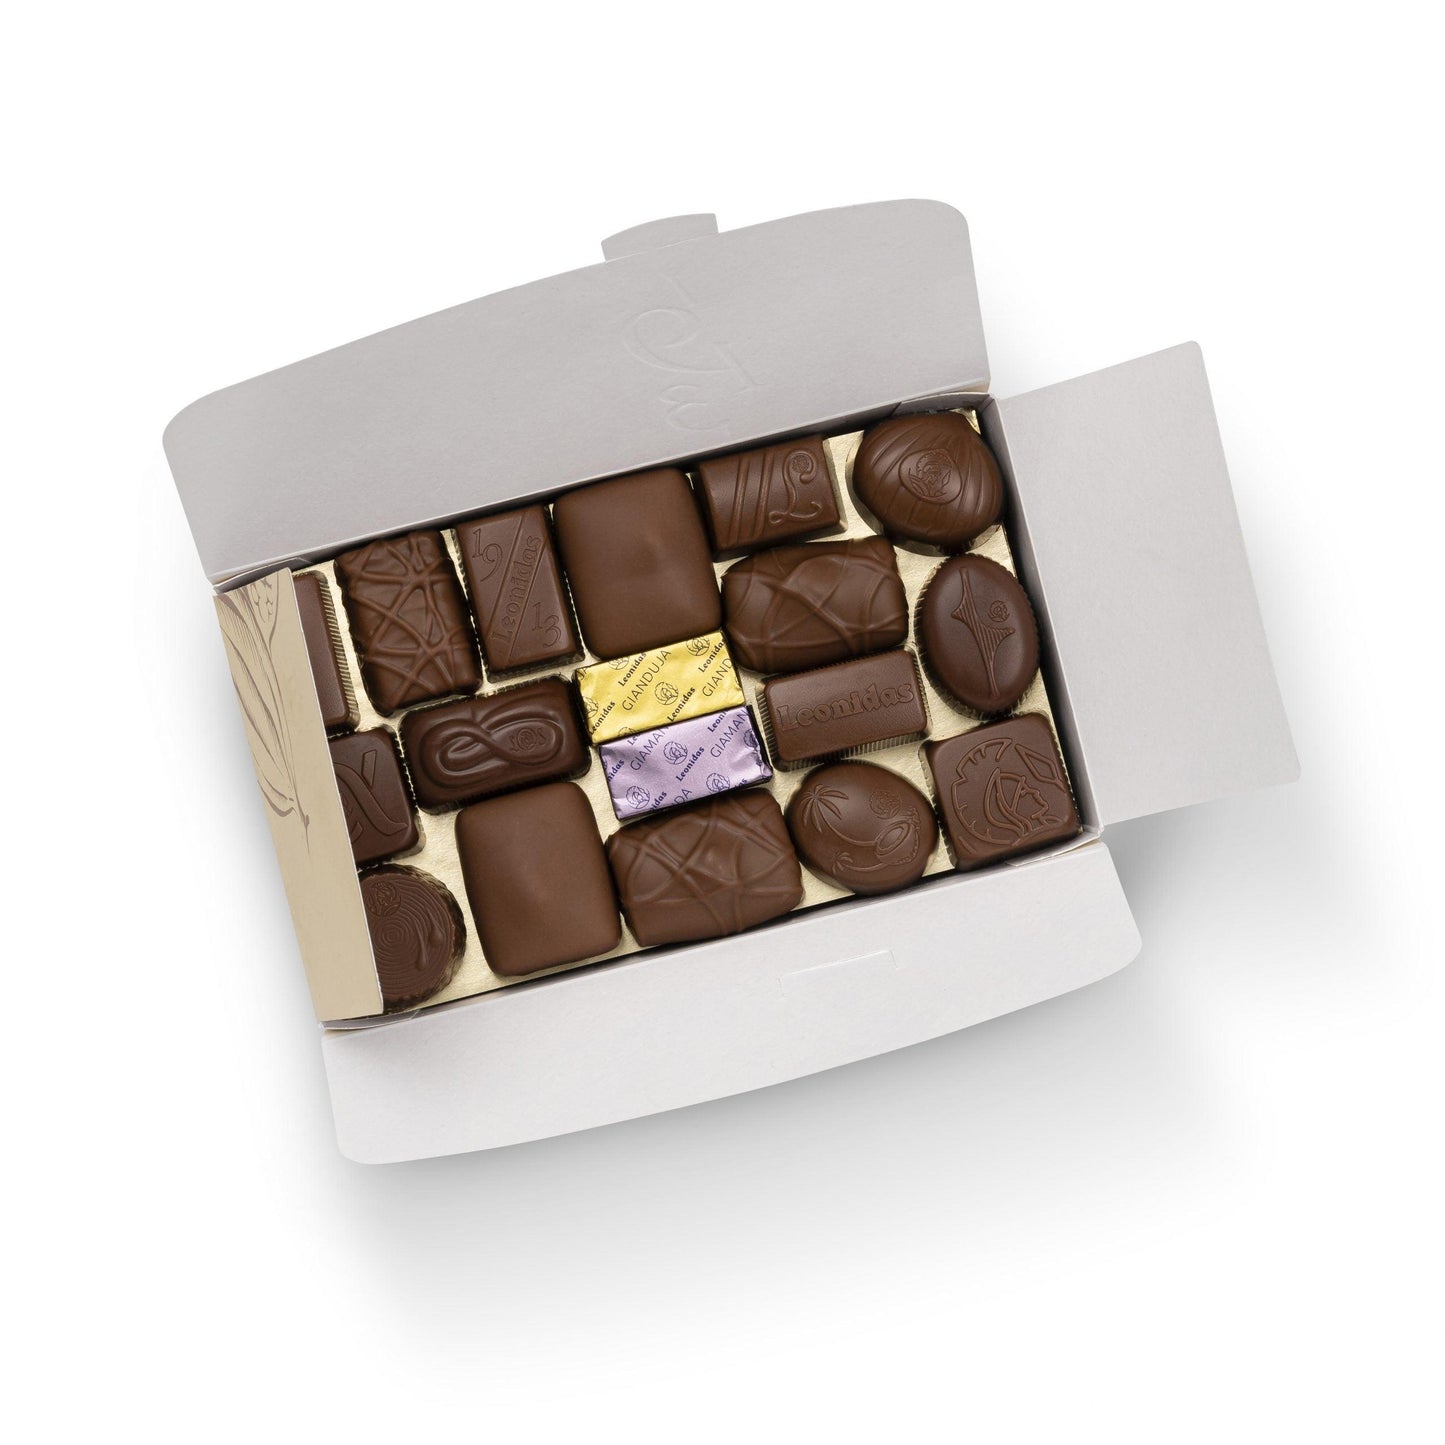 MILK Chocolates Ballotin Box - 30 Chocolates - leonidasbrighton.co.uk - Leonidas Brighton